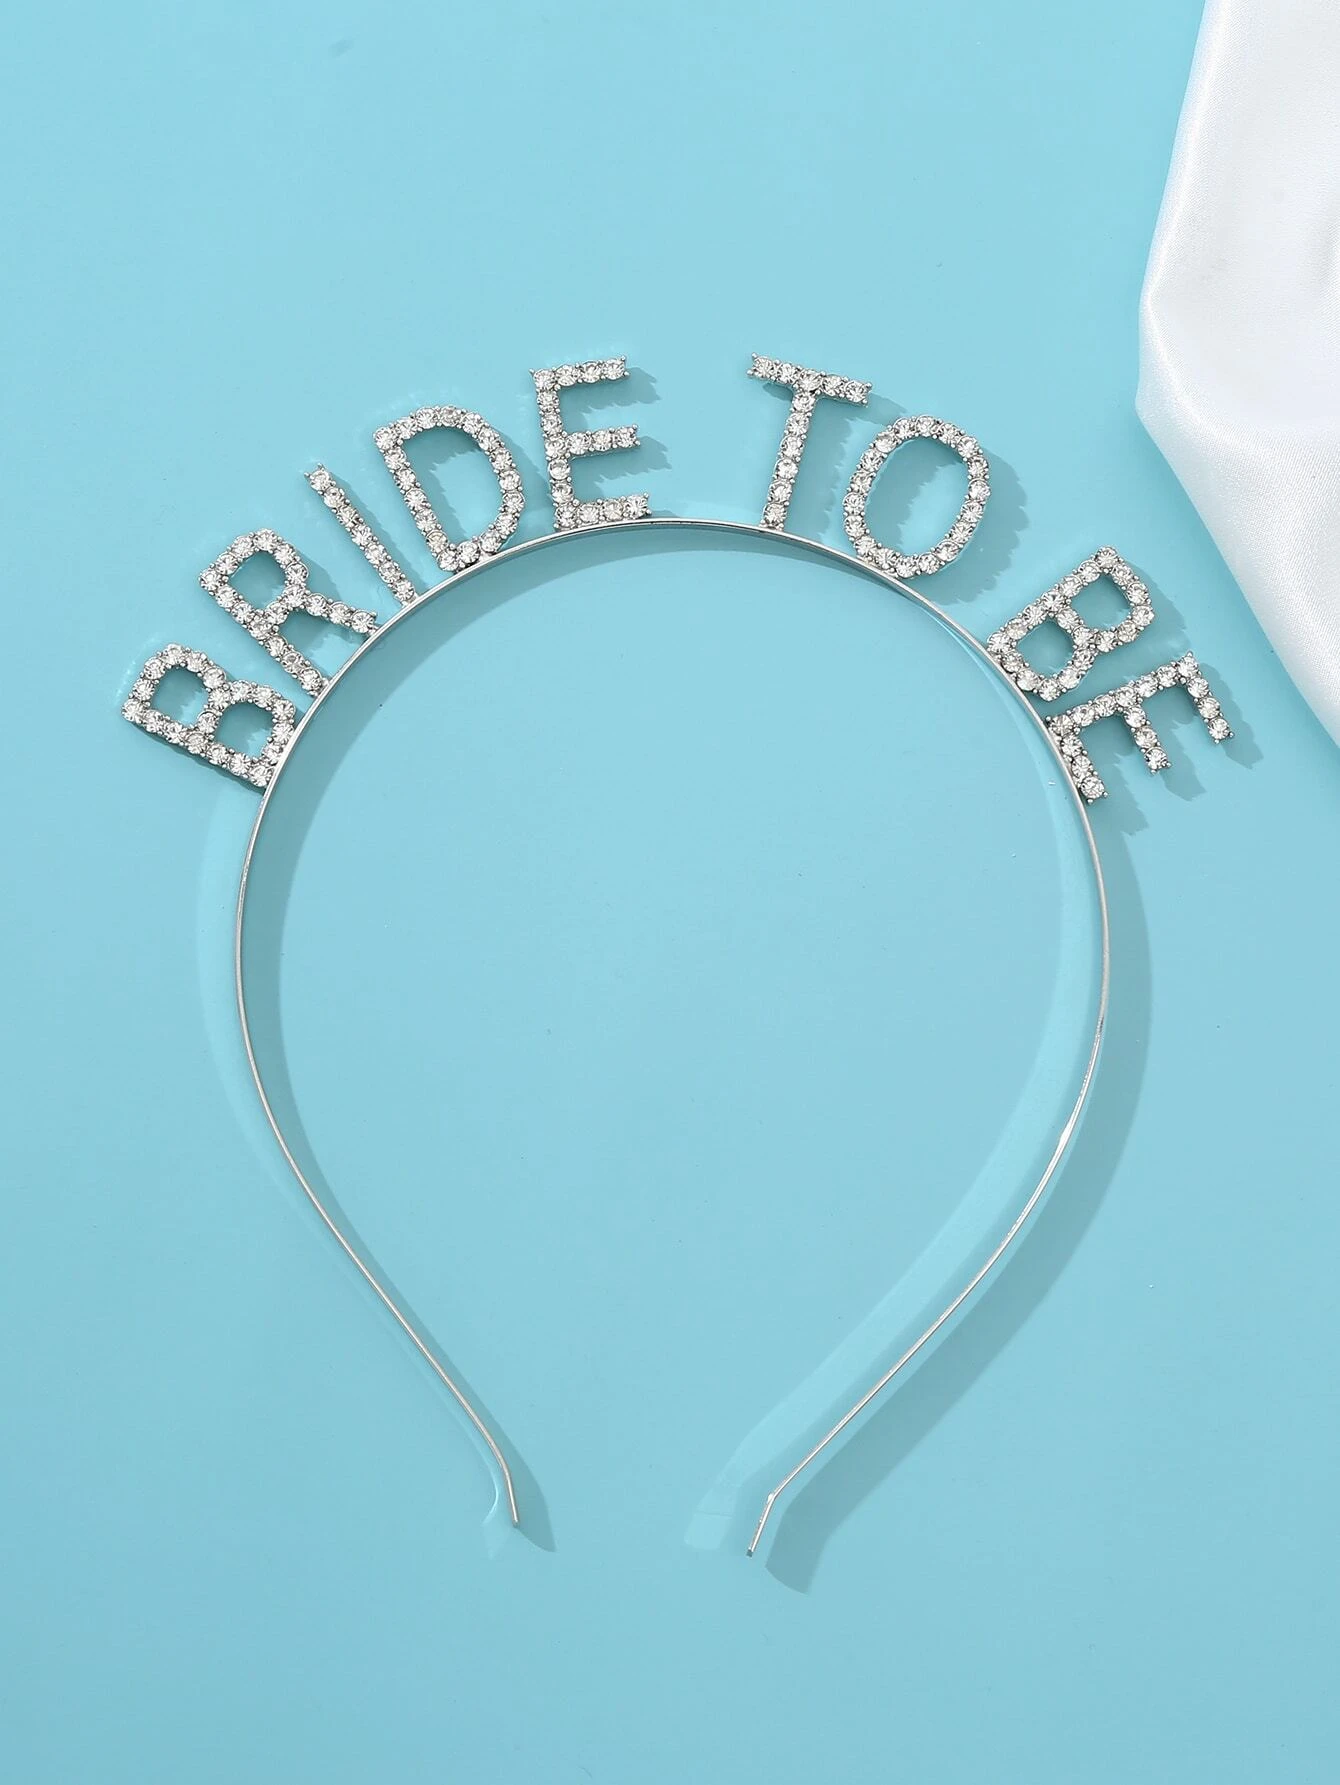 Bride-to-be Diamante Headband